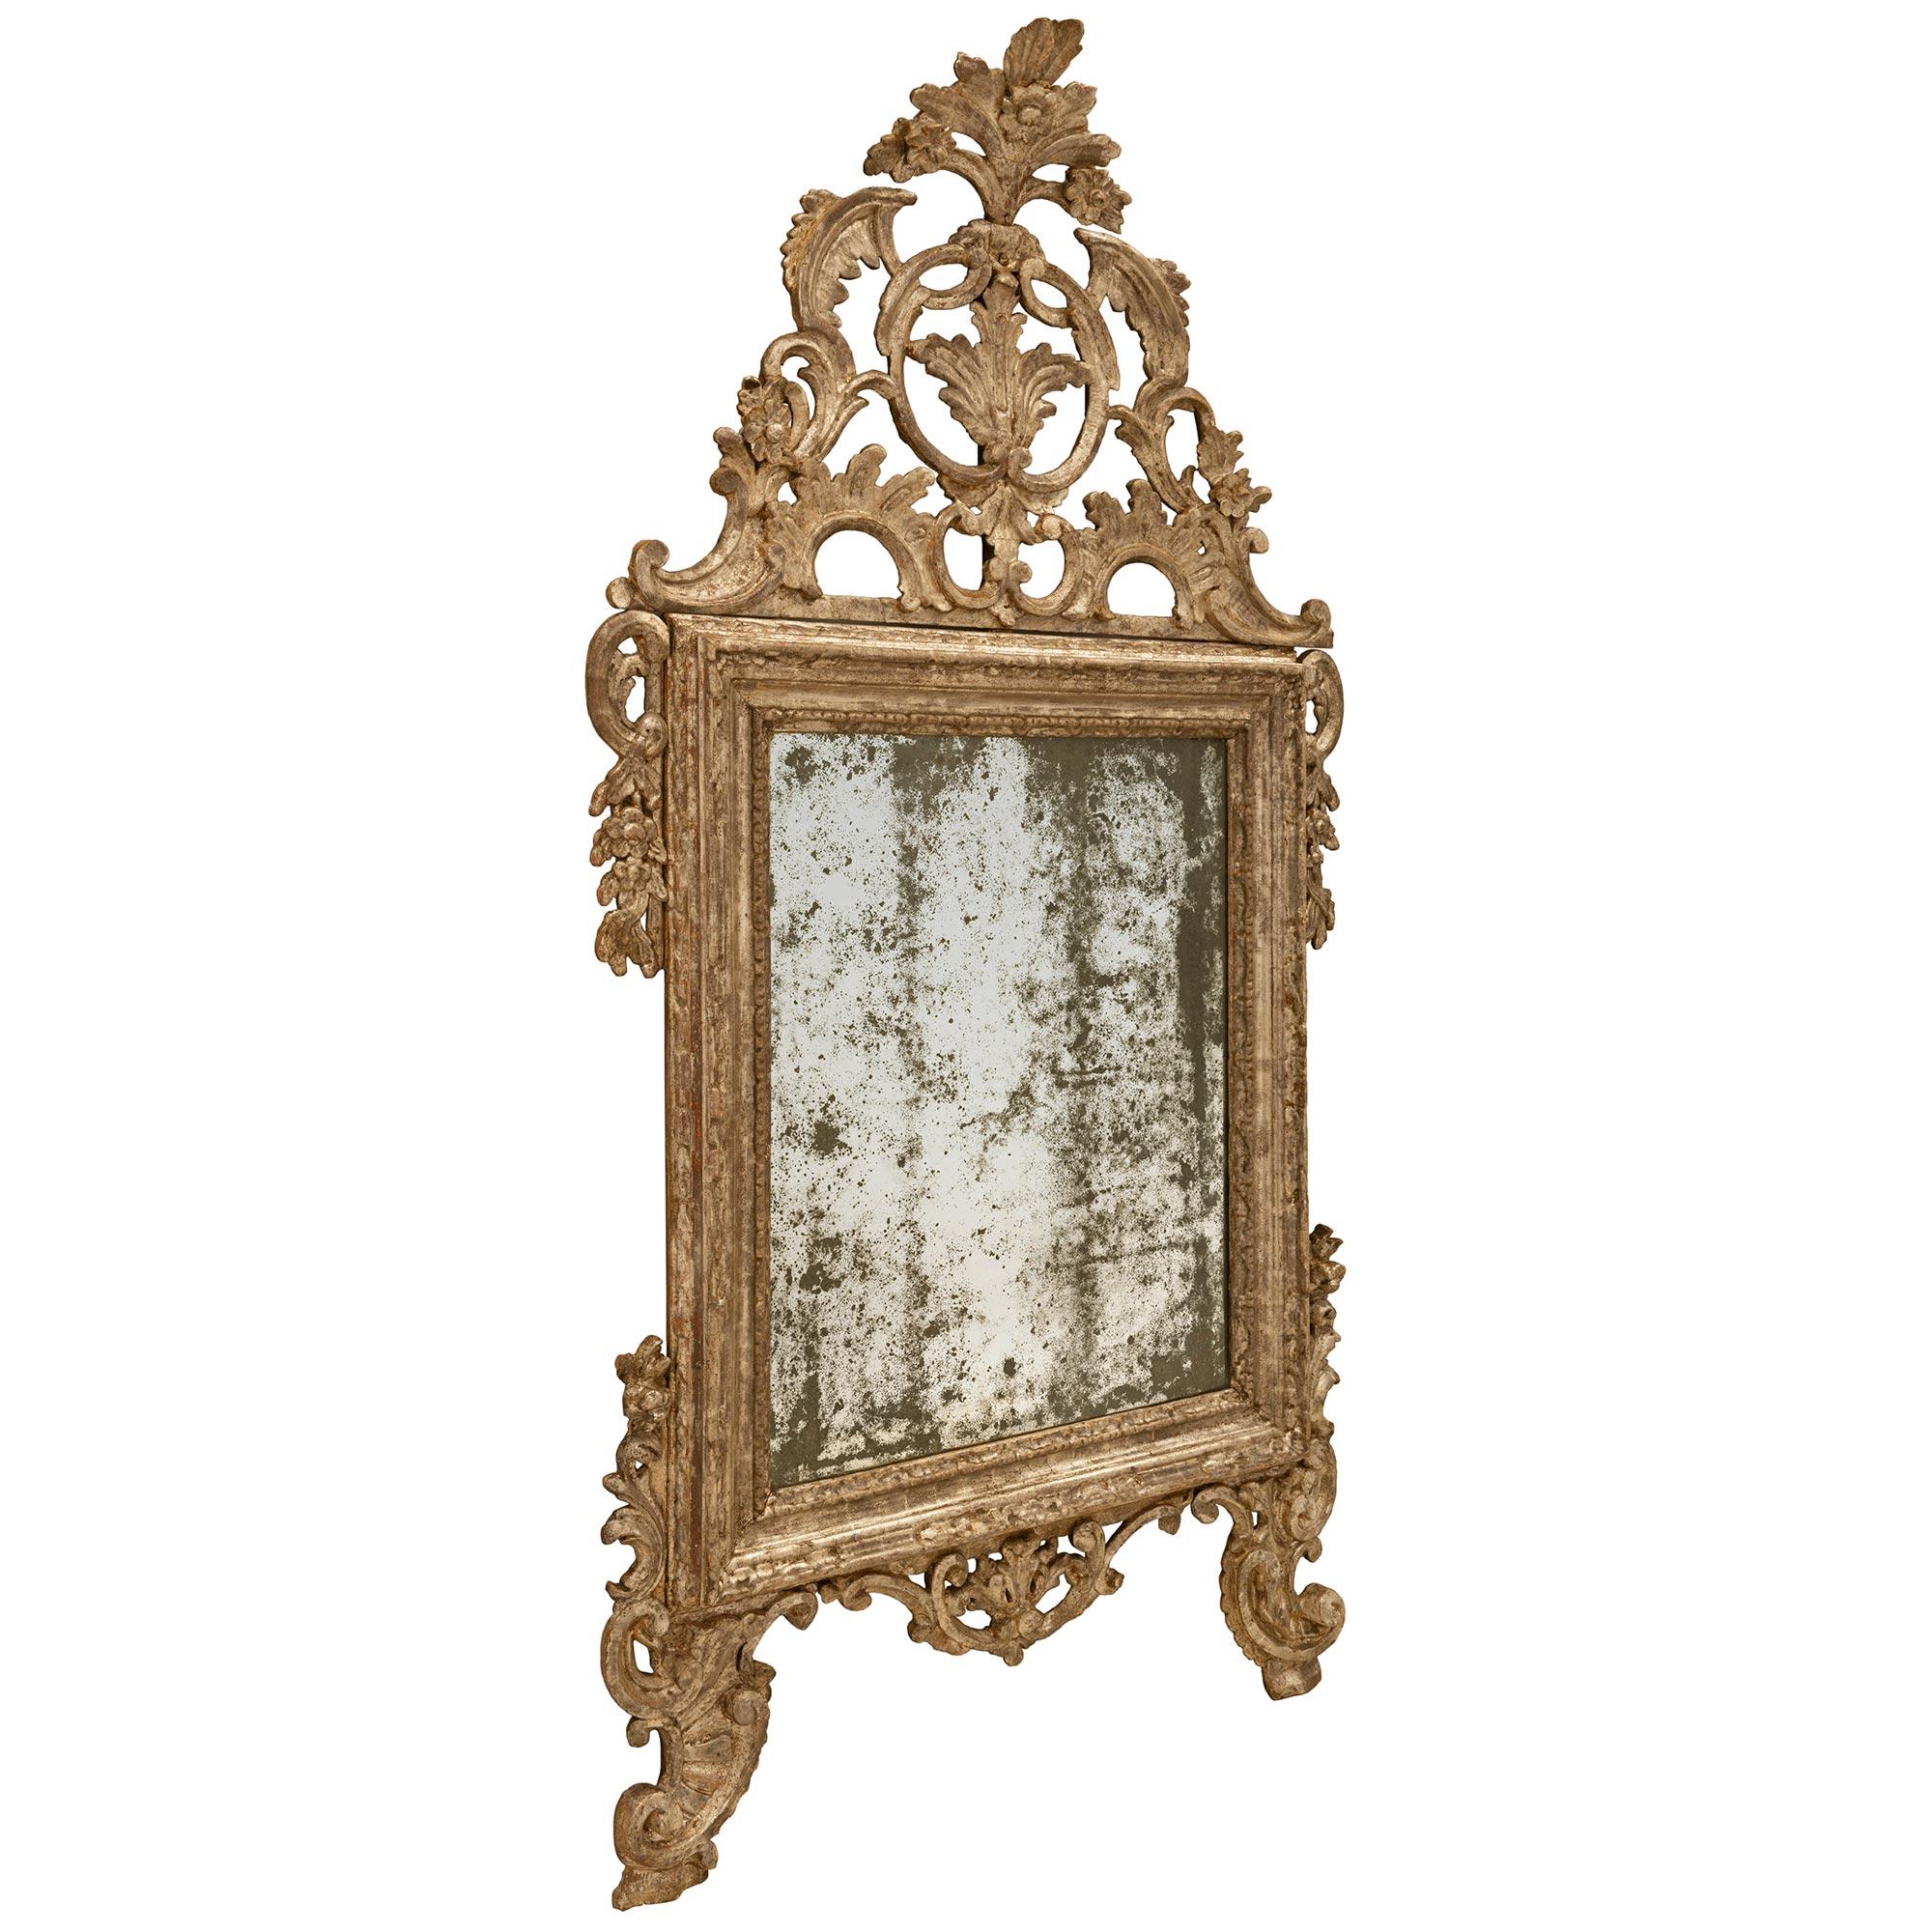 Un très unique miroir mecca italien du XVIIIe siècle d'époque Louis XIV en or blanc. Les deux pieds à volutes sont reliés par une guirlande de feuilles d'acanthe. La plaque de miroir d'origine est encadrée par une bordure tachetée, avec de riches